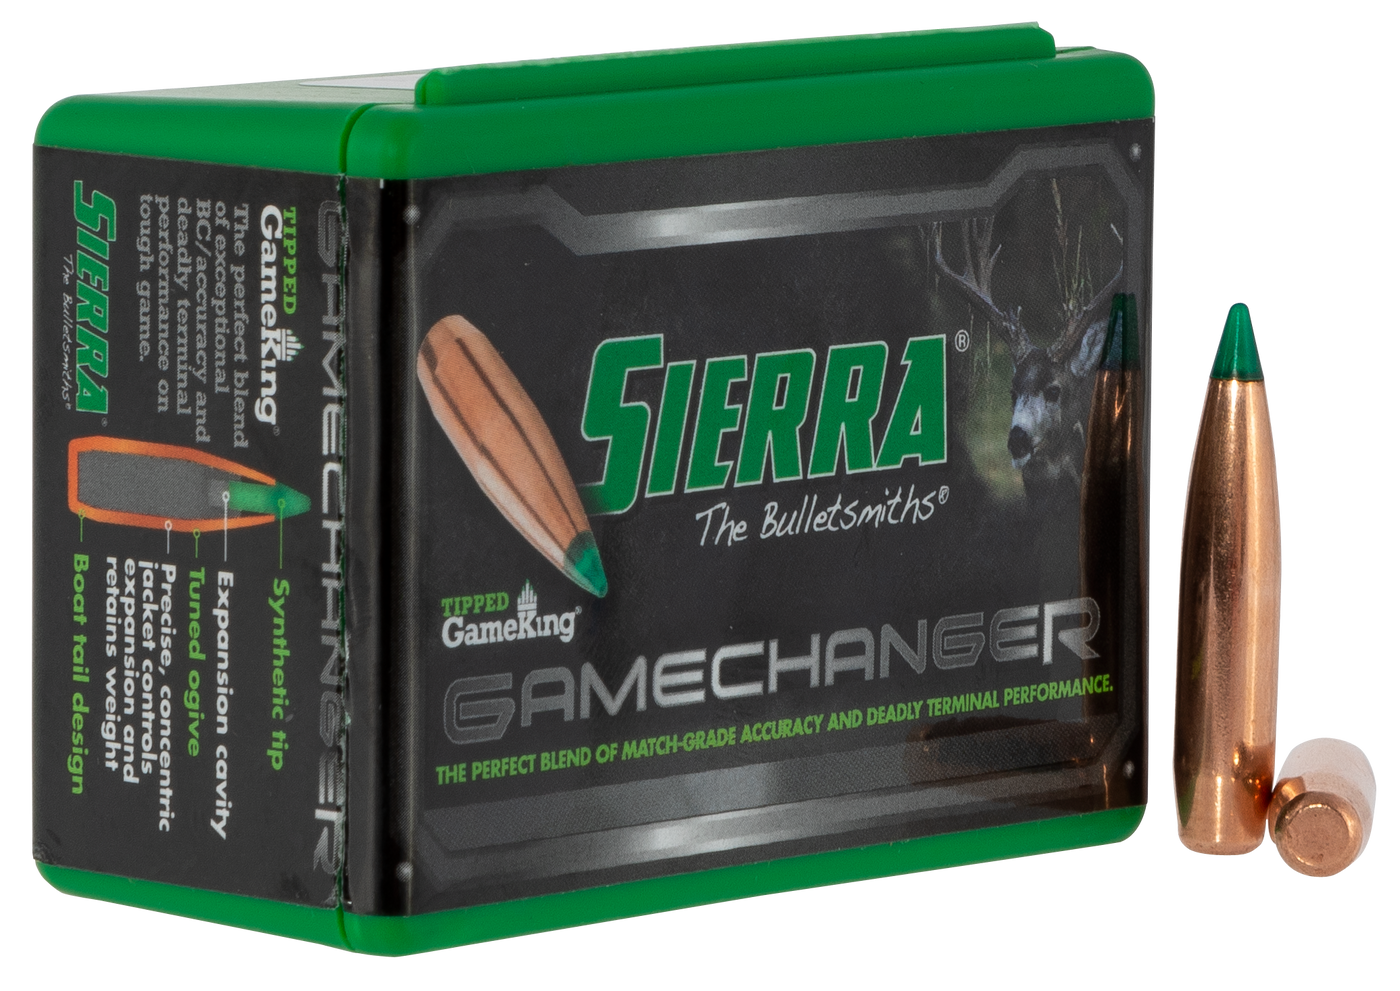 Sierra Bullets 7mm .284 165gr - Tgk Gamechanger 50ct